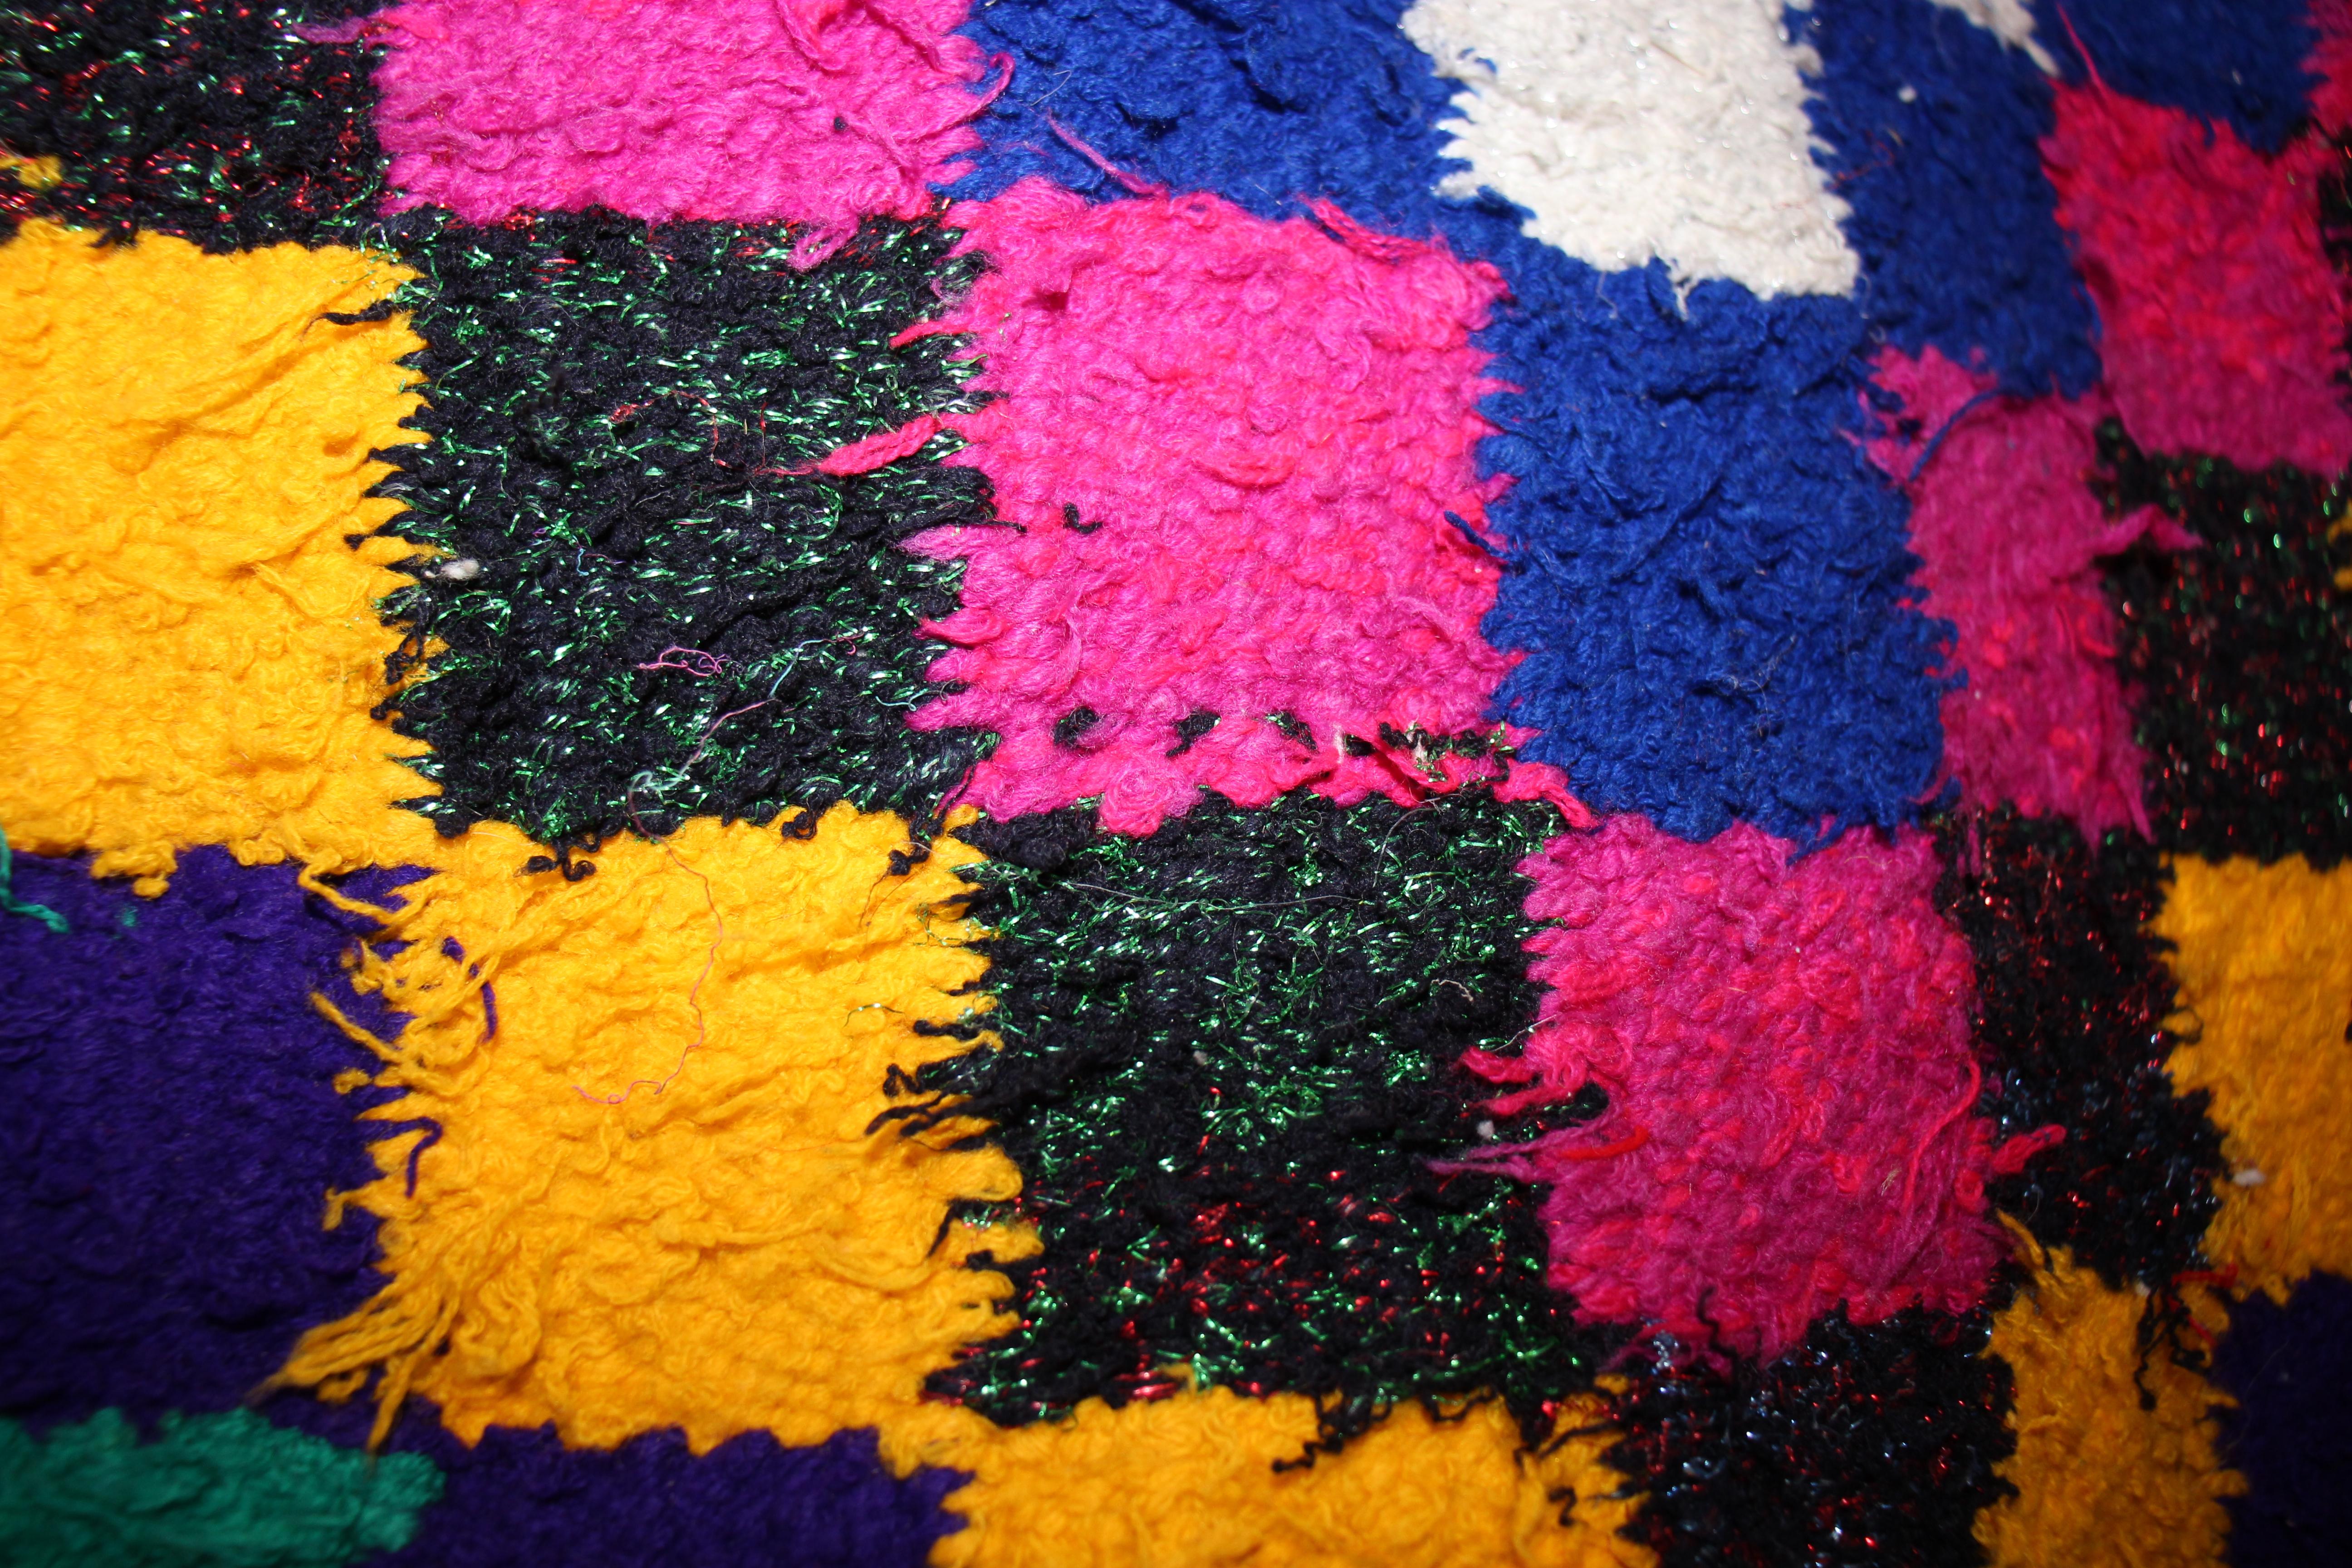 Fabric Big Colorful Vintage Carpet, Boho Style Rug, Similar to Kilim